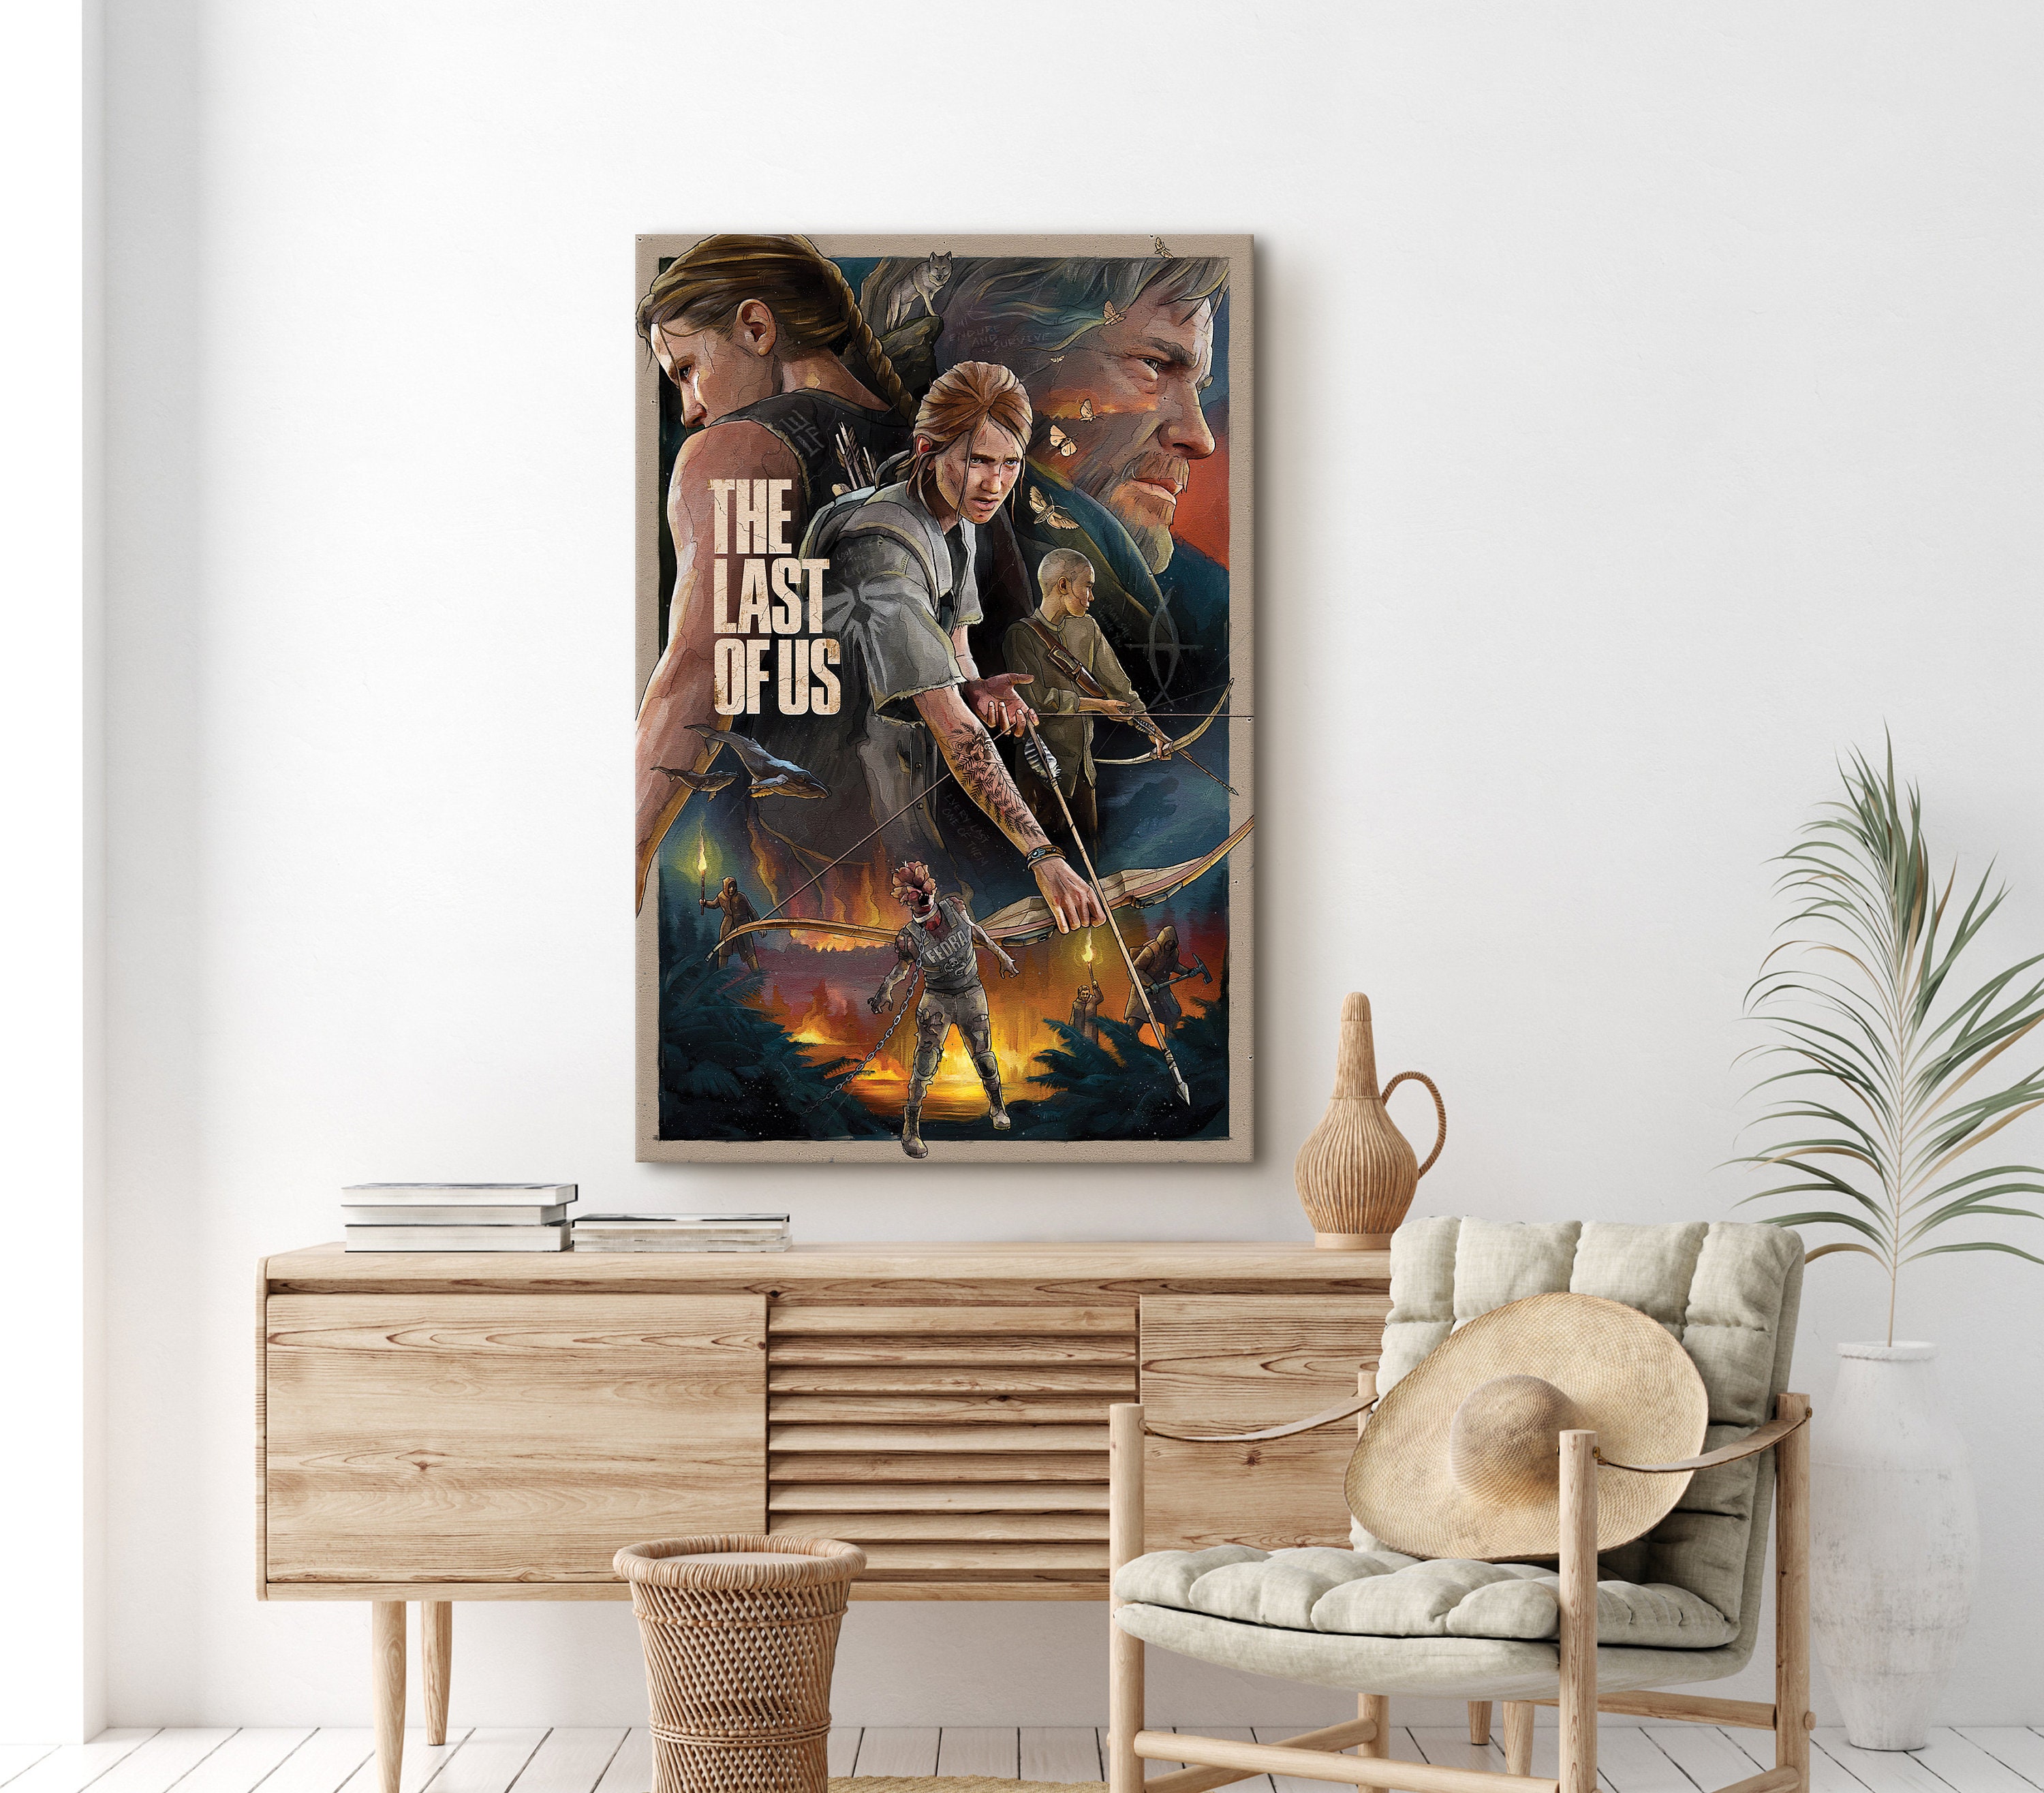 The Last of Us poster & stampe di Fan Art - Printler